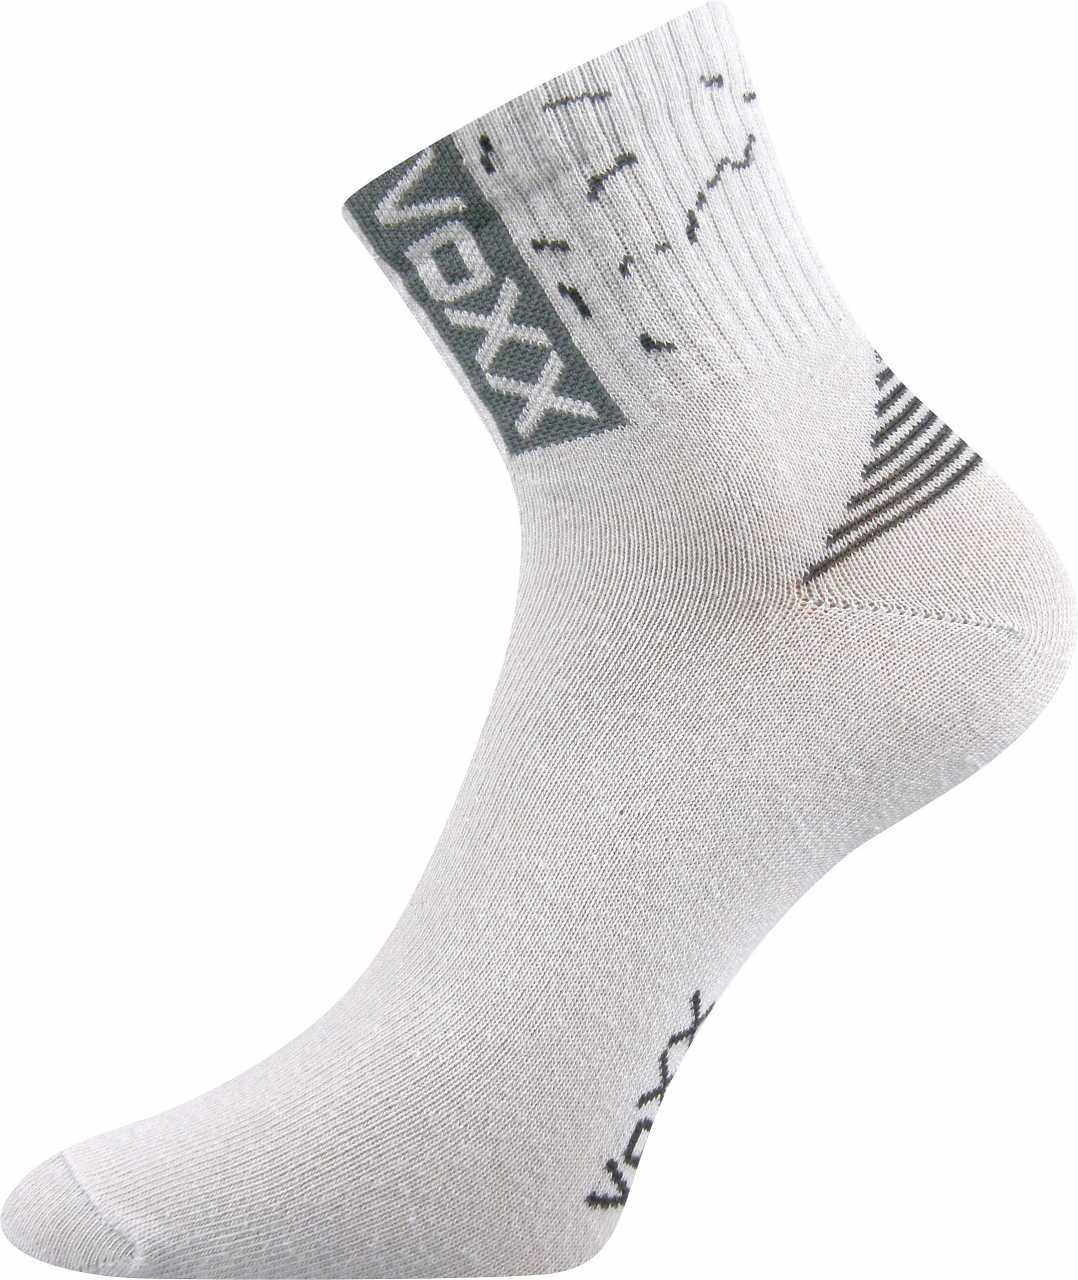 Ponožky sportovní Voxx Codex - světle šedé, 43-46